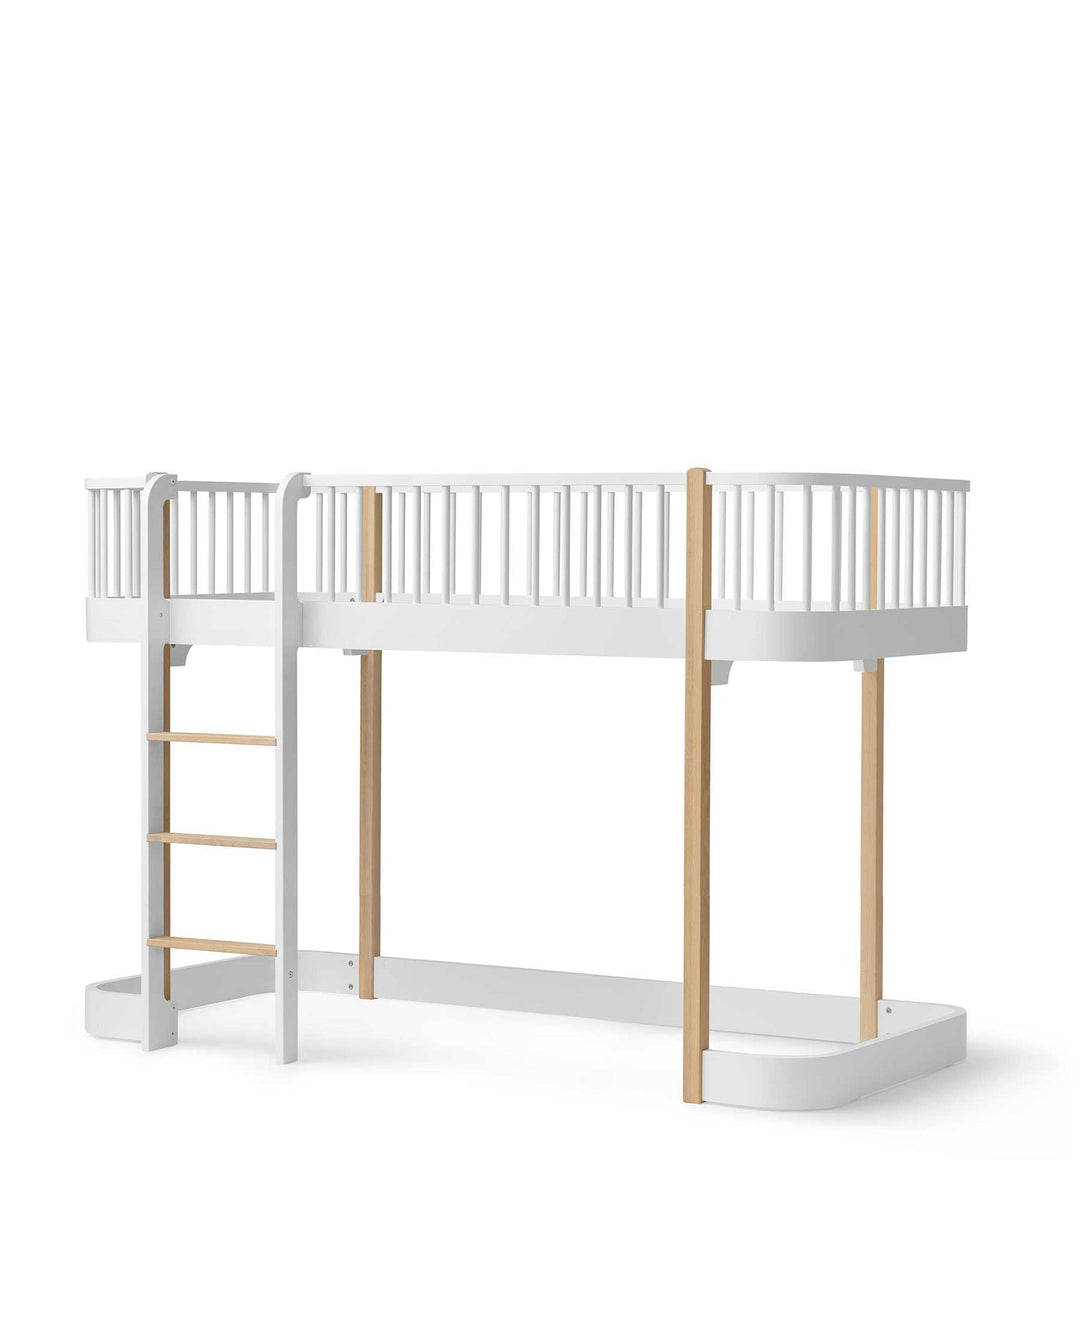 Wit en eiken low loft bed van Oliver Furniture met een gezellige speelruimte onder het bed, ingericht in een lichte kinderkamer.